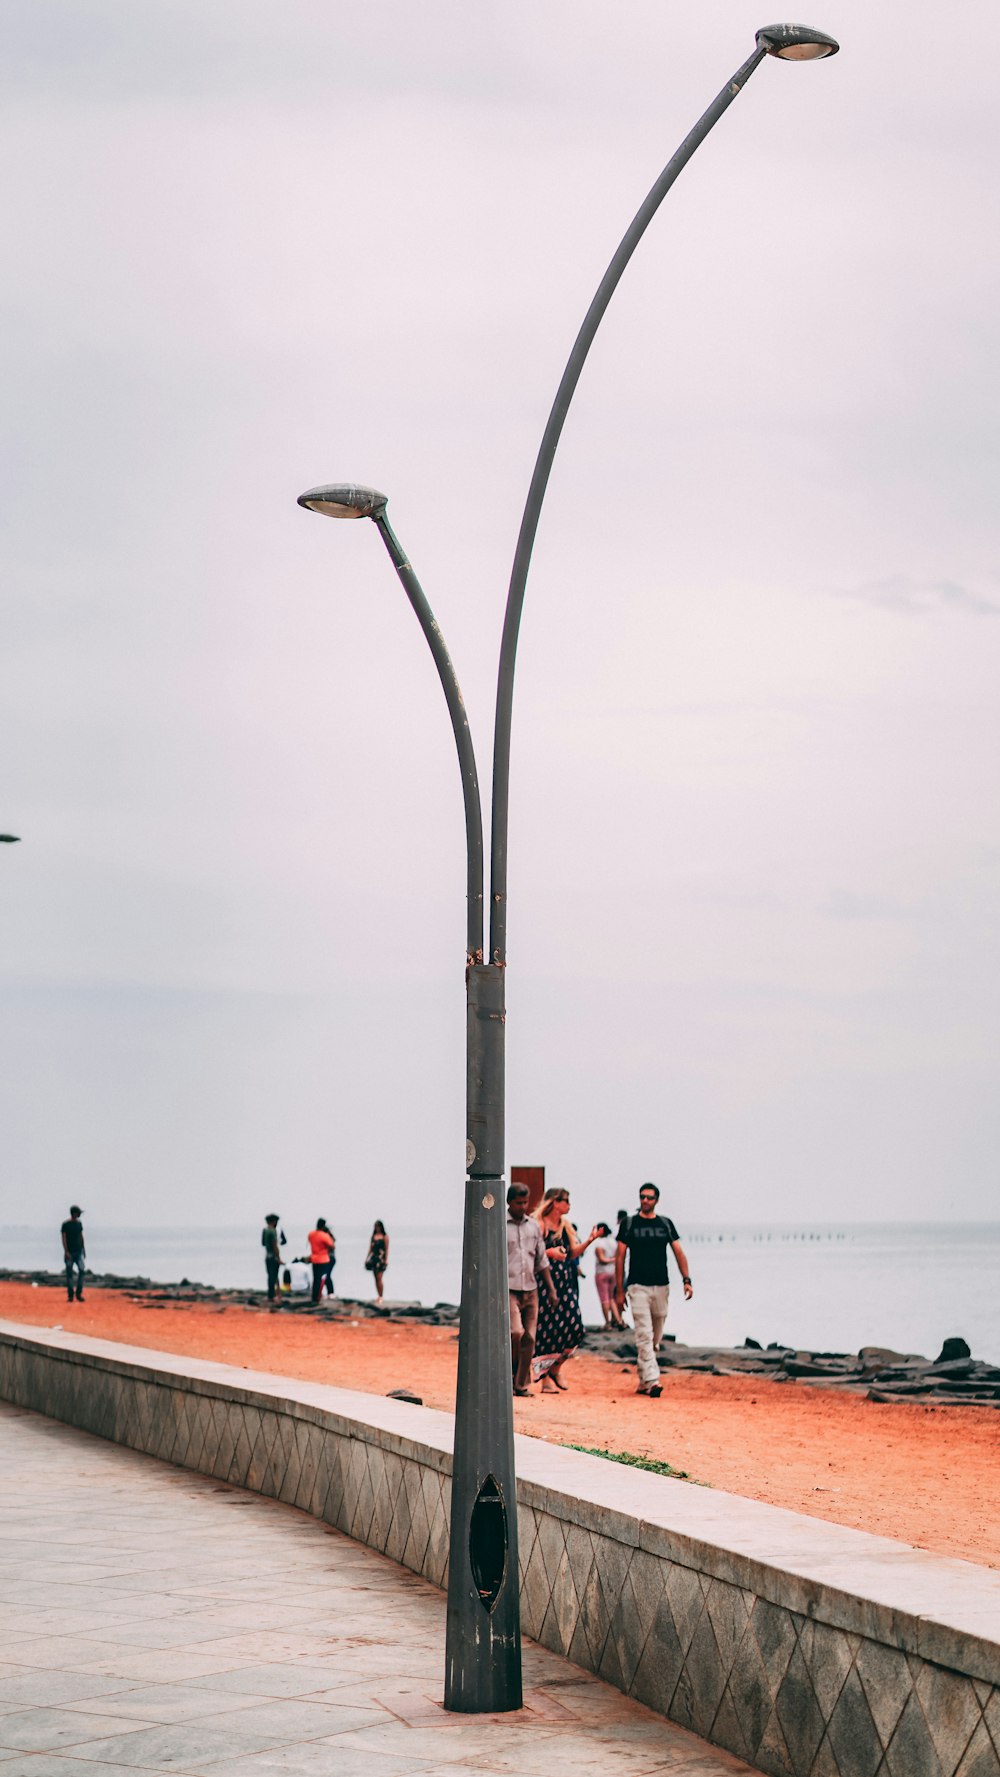 街灯柱の隣のビーチを歩く人々のグループ